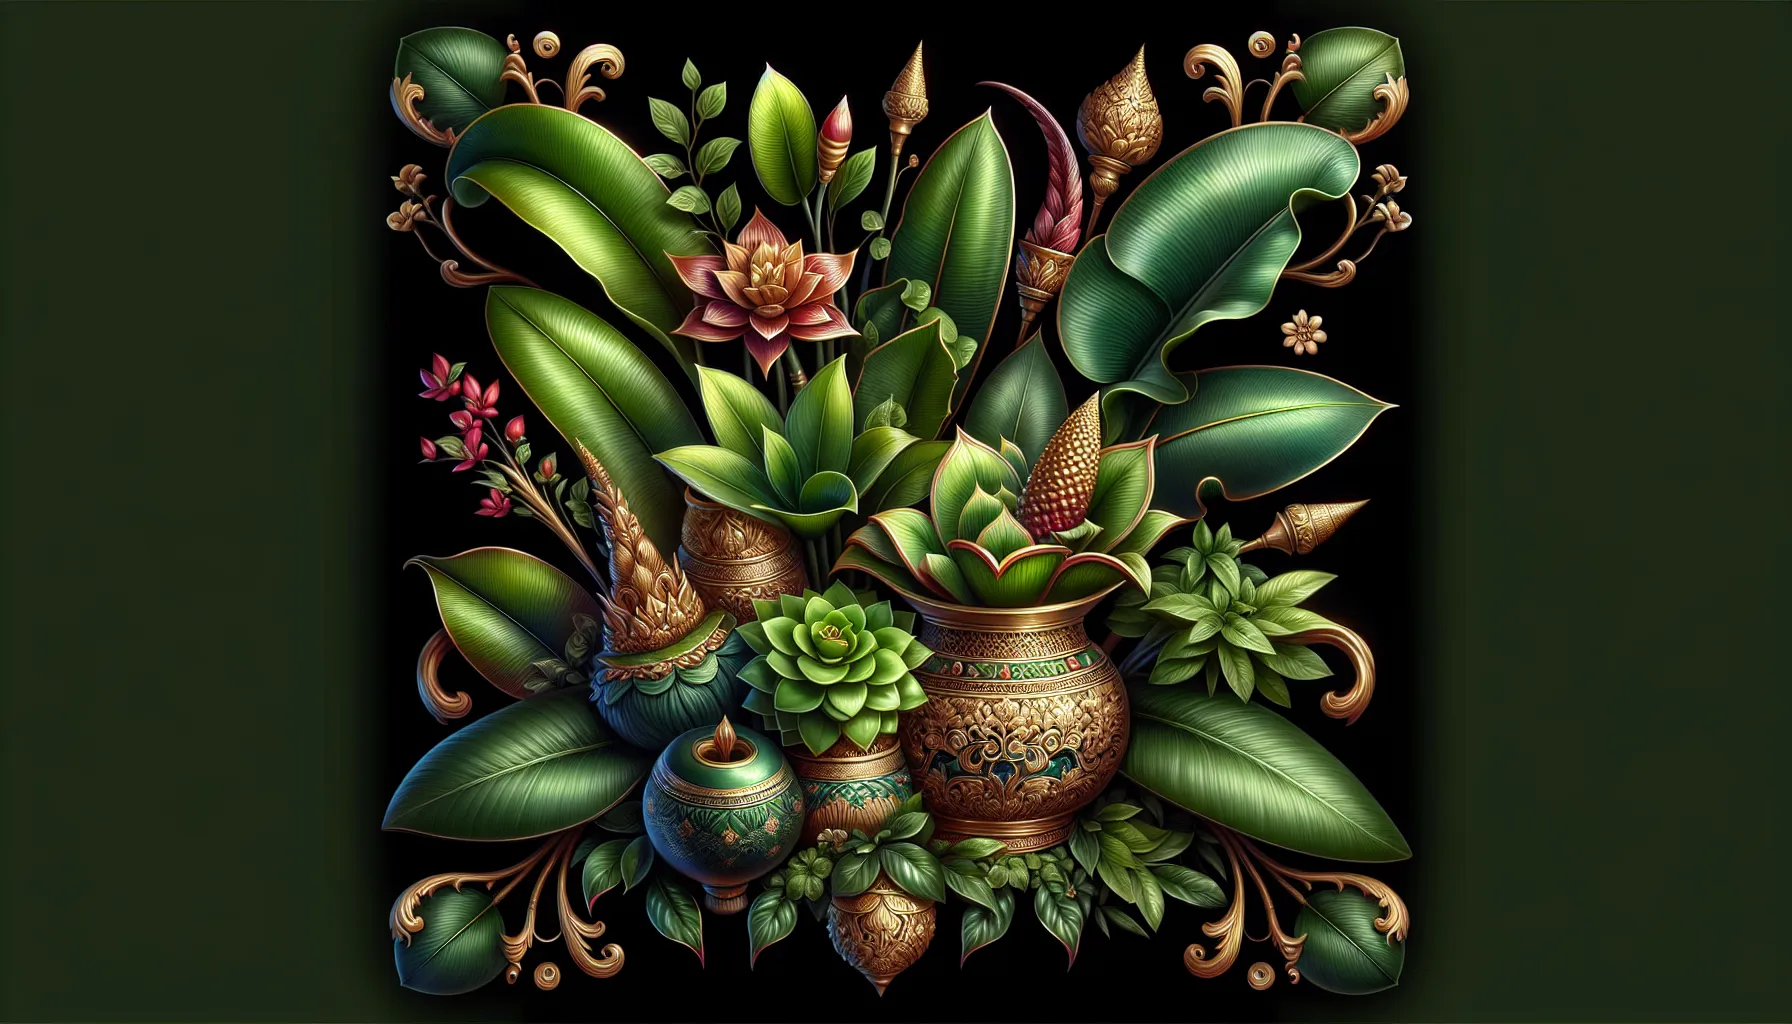 Imagen de varias plantas decorativas con hojas verdes y brillantes, ideales para atraer prosperidad y buena fortuna a tu hogar.